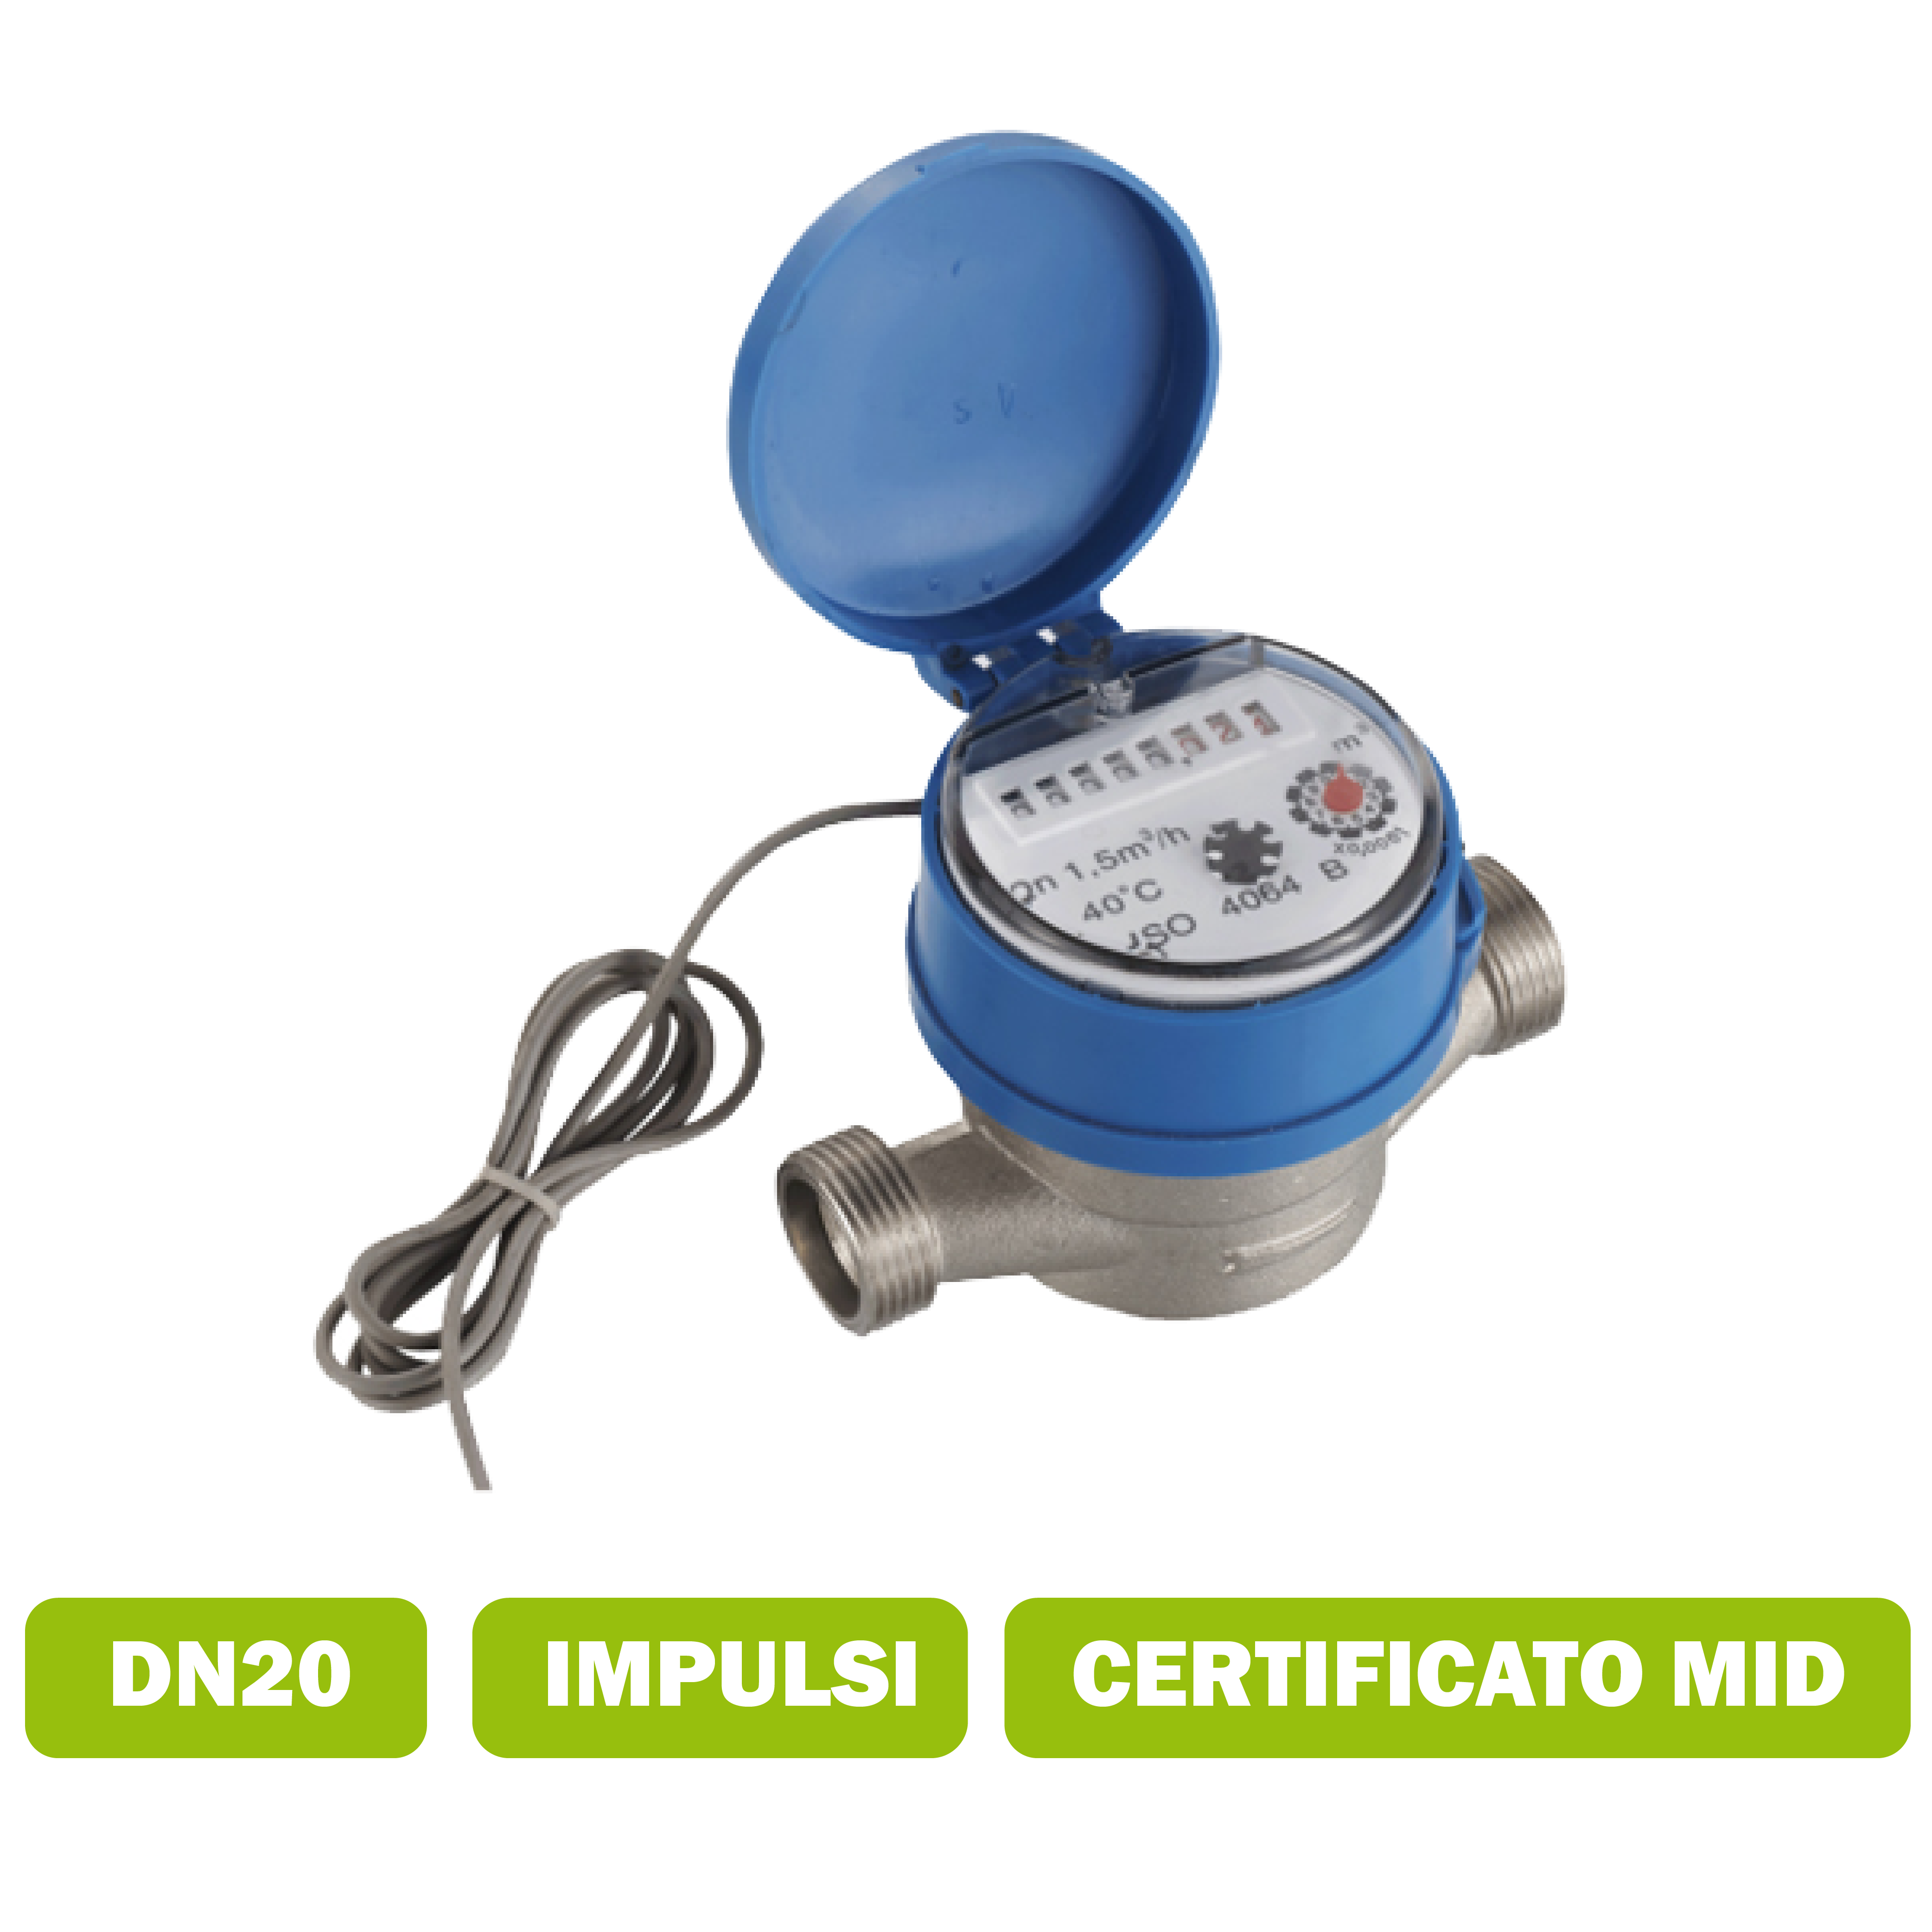 Water meter per acqua calda (90°C) getto singolo DN20 portata media 4.0 m3/h con interfaccia impulsi certificato MID